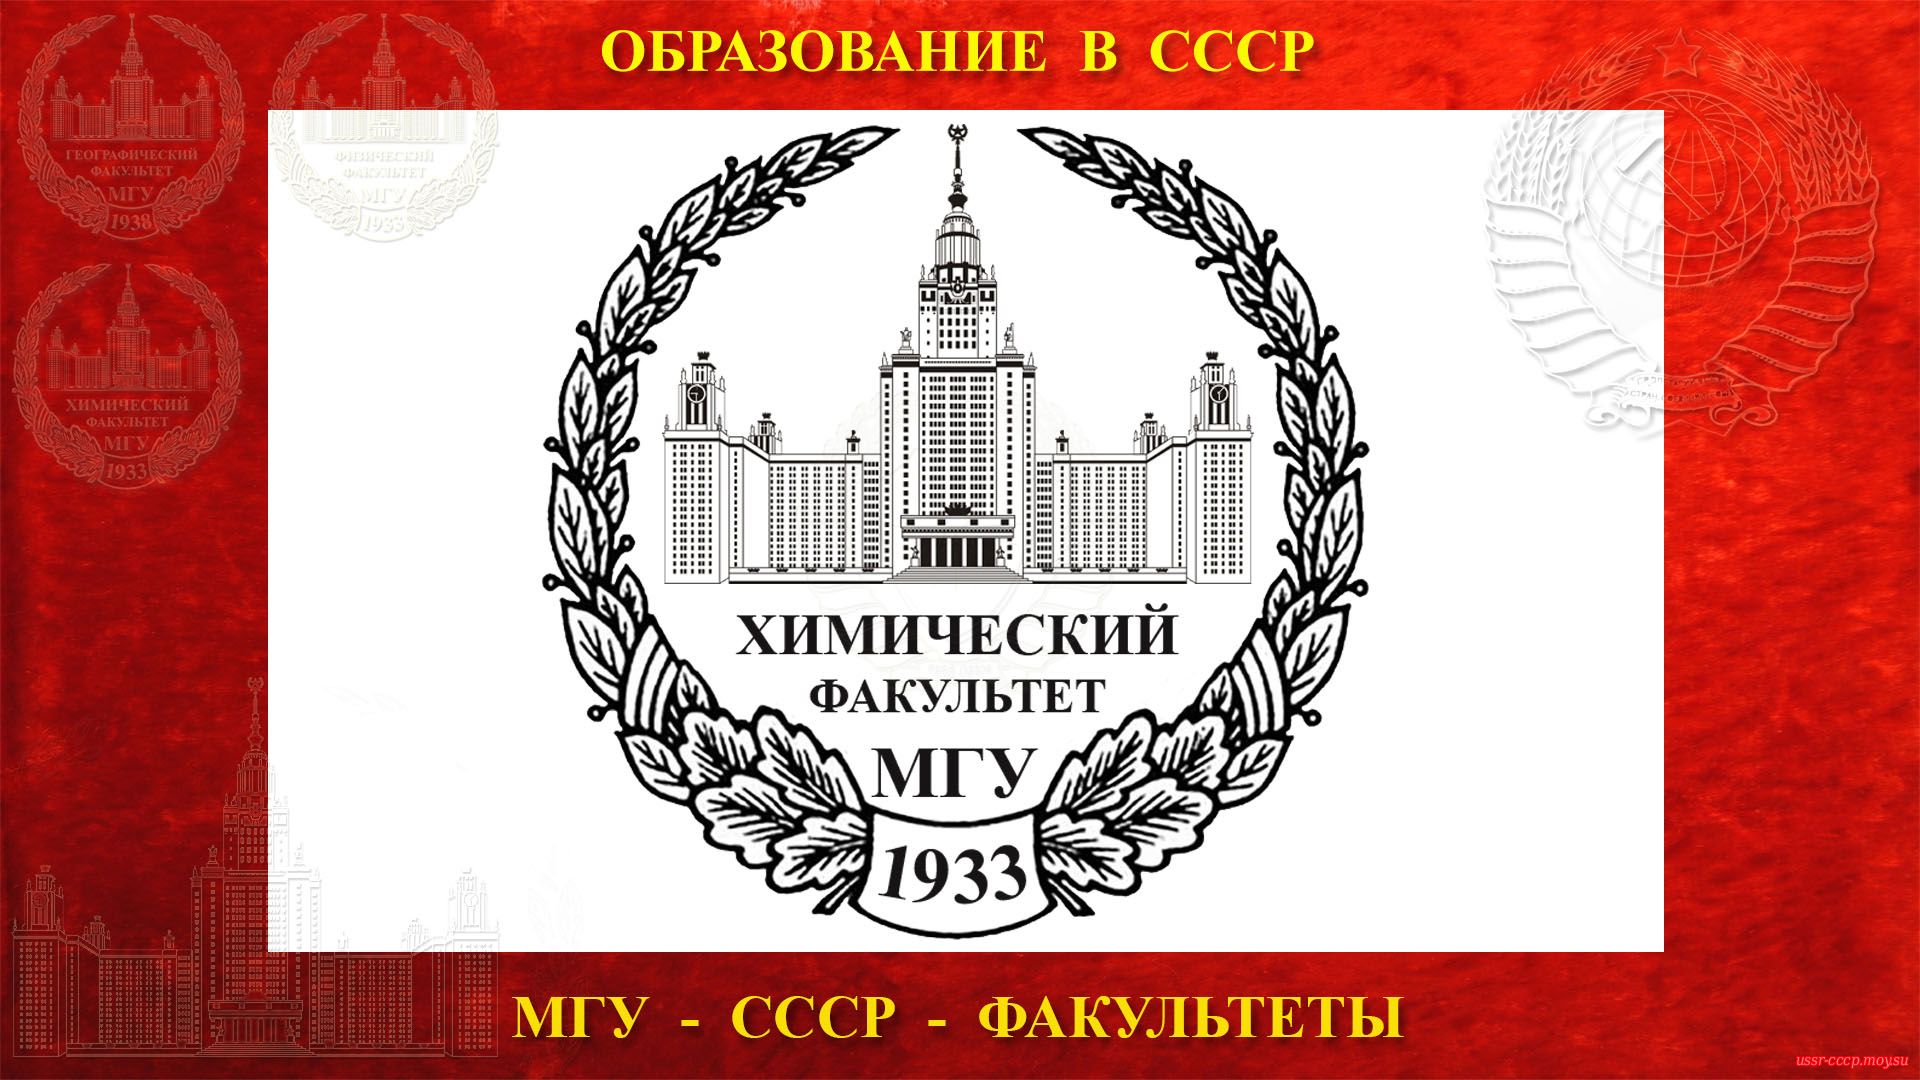 Химический факультет МГУ — (04.04.1933) повествование